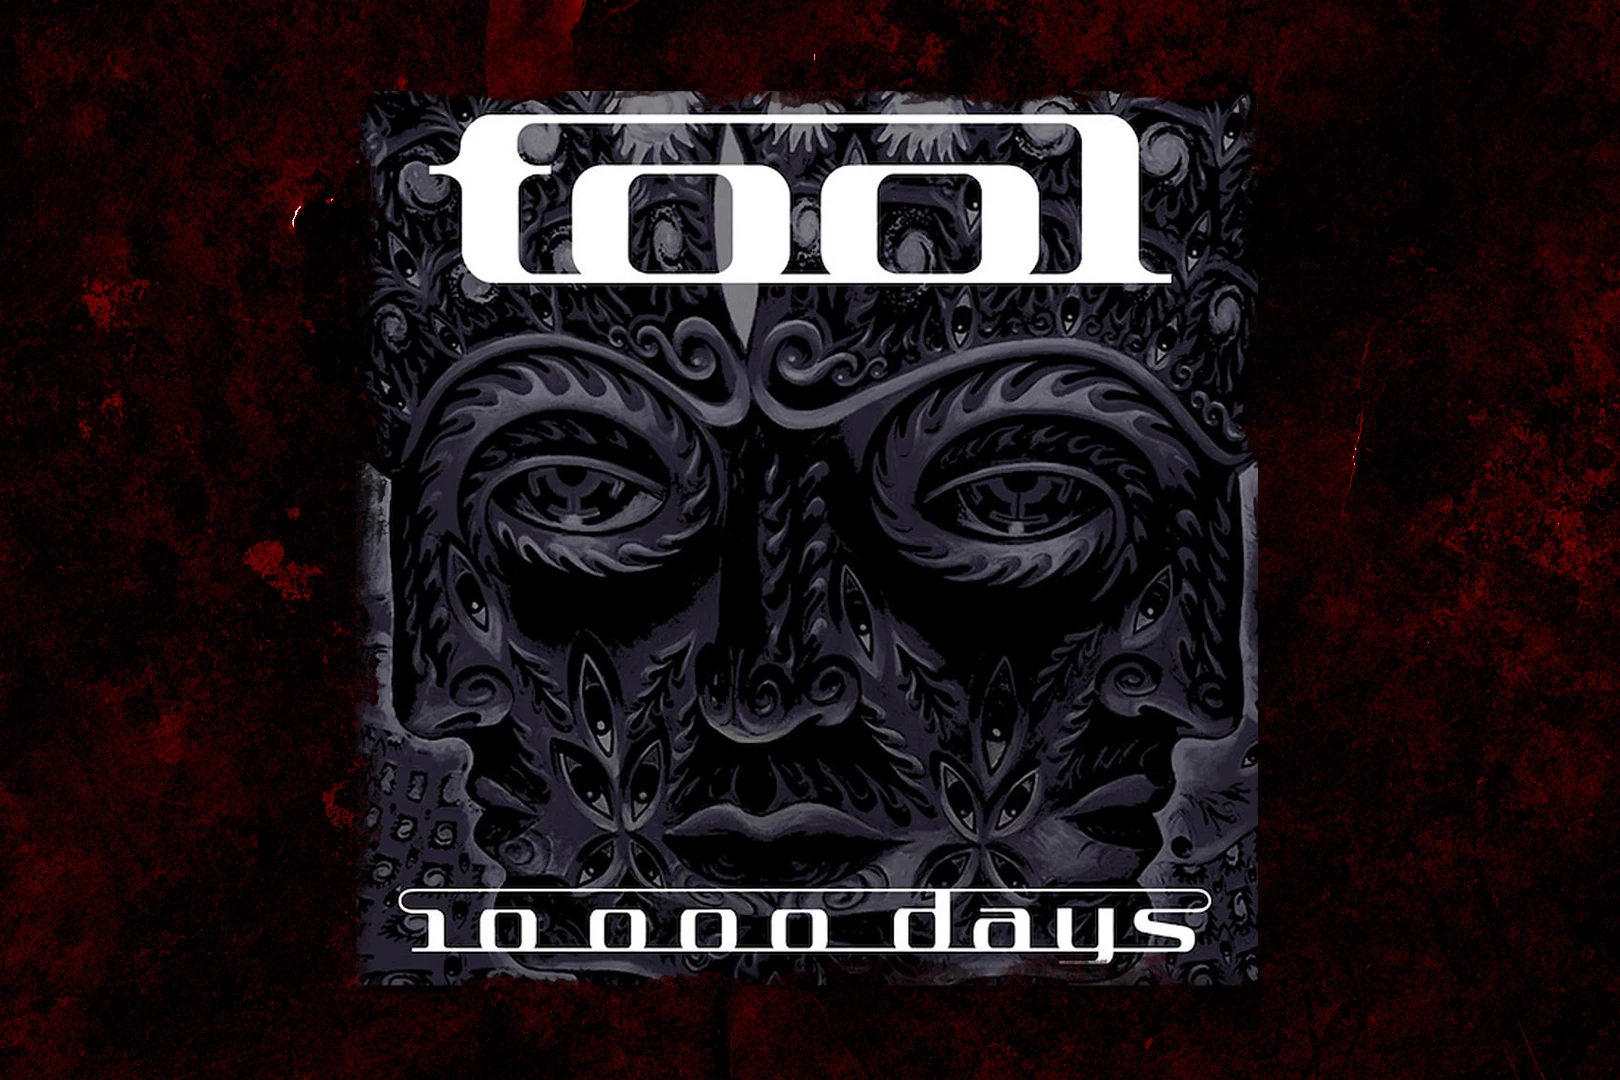 tool aenima album cover meaning